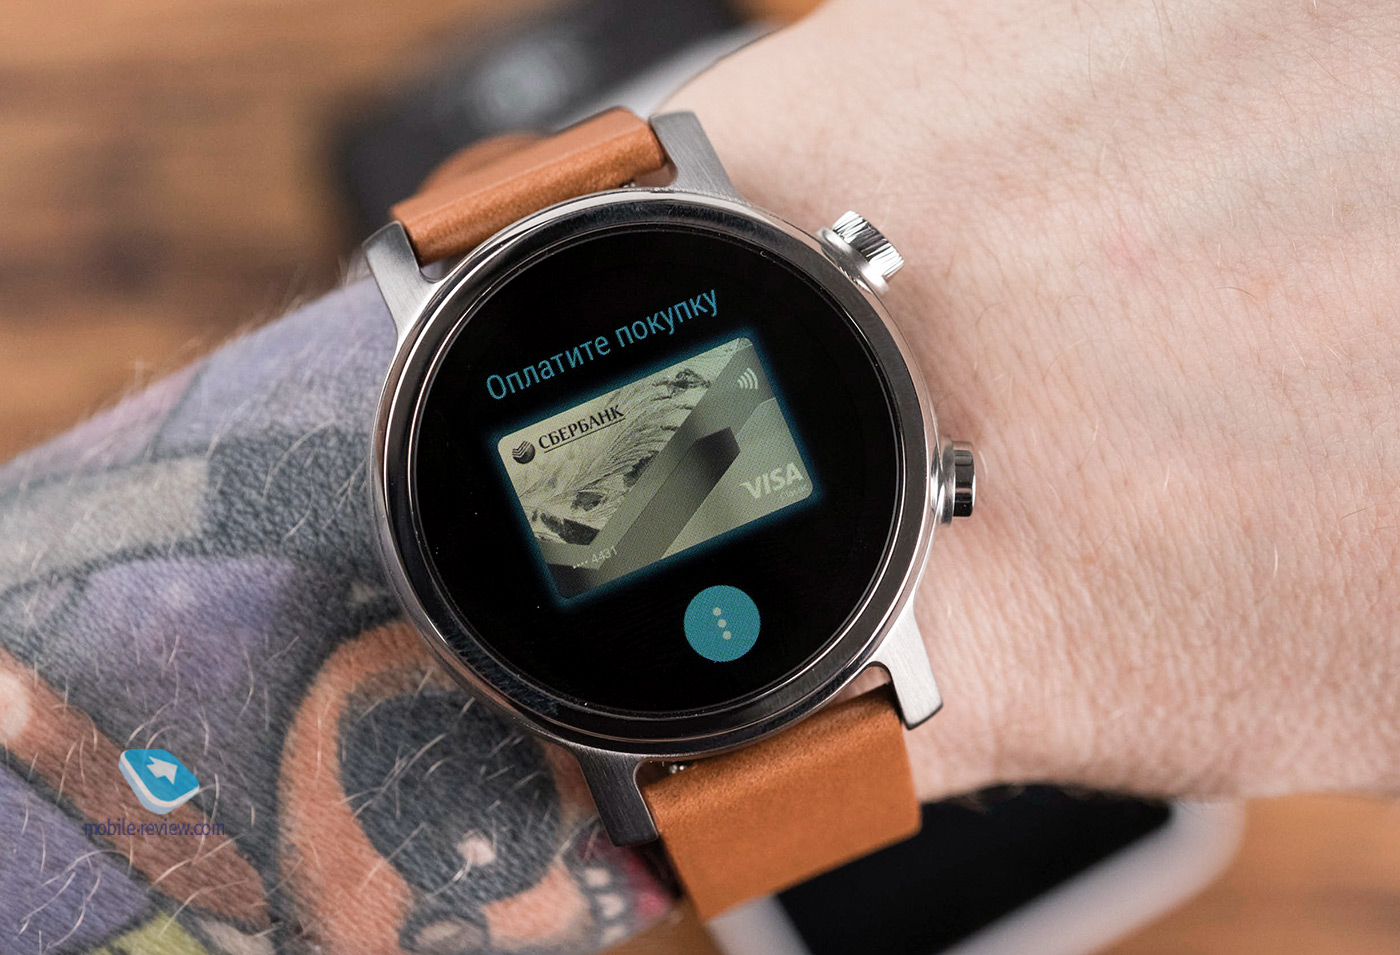 Moto 360 v3 smartwatch review (2020)